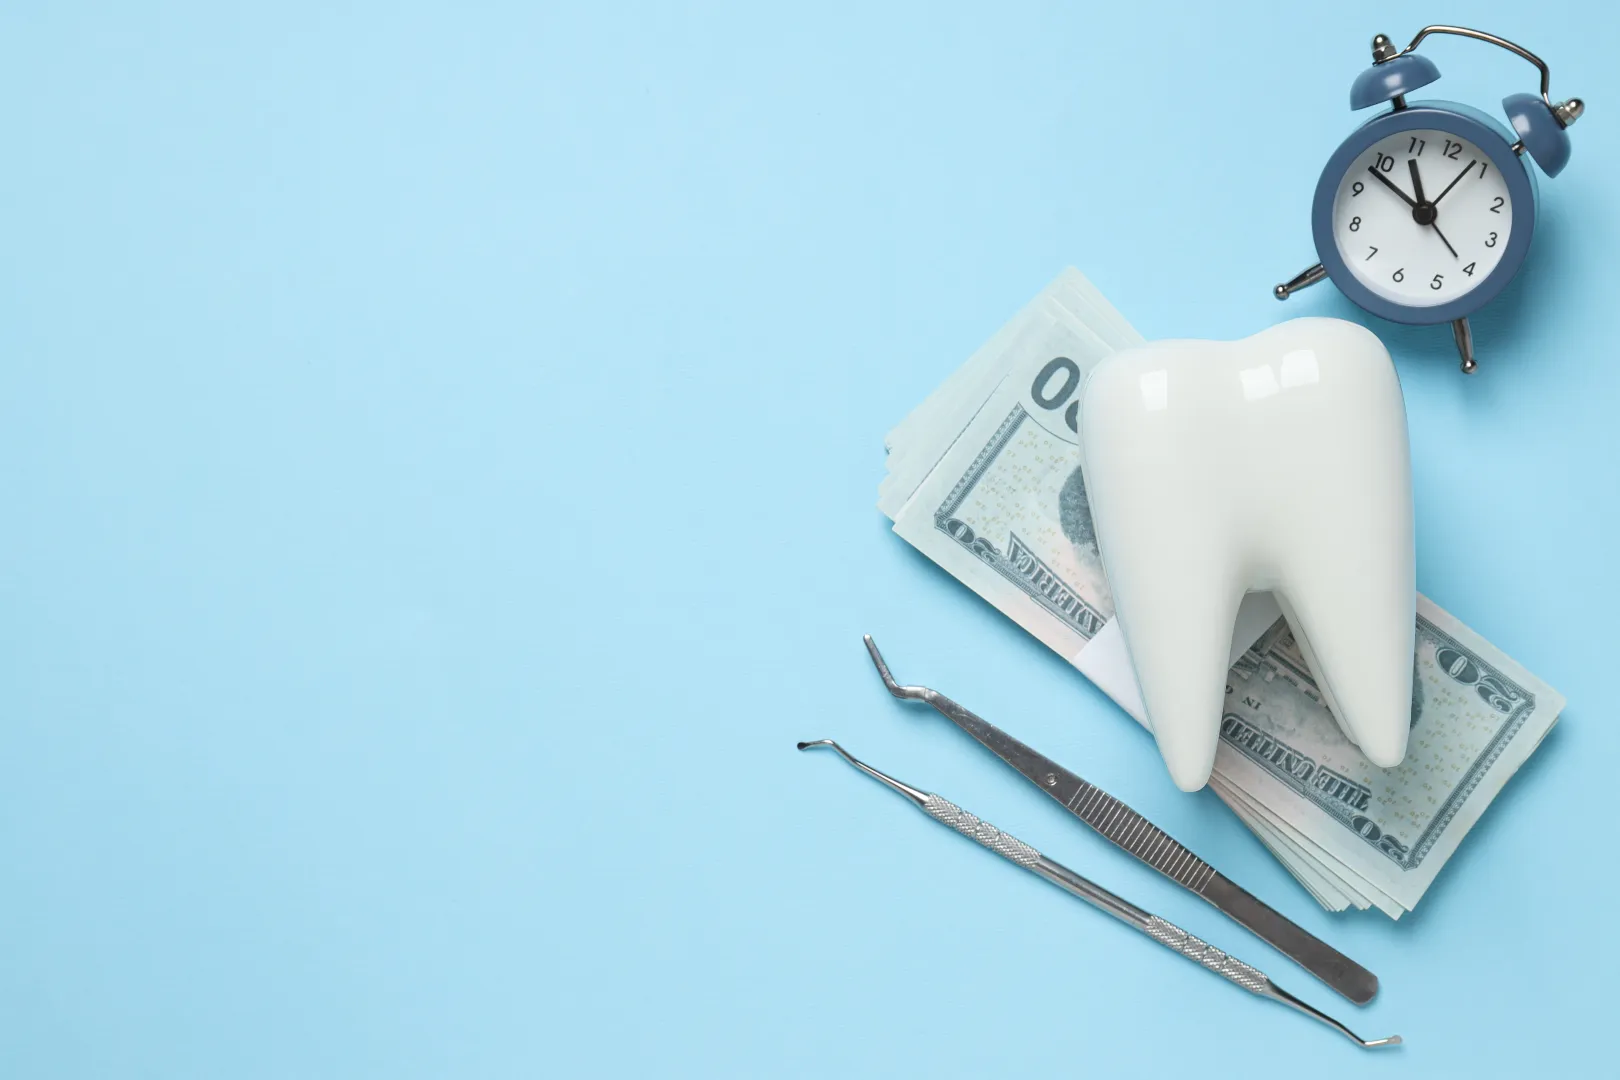 Impianti dentali in Turchia: perché i costi sono così bassi?